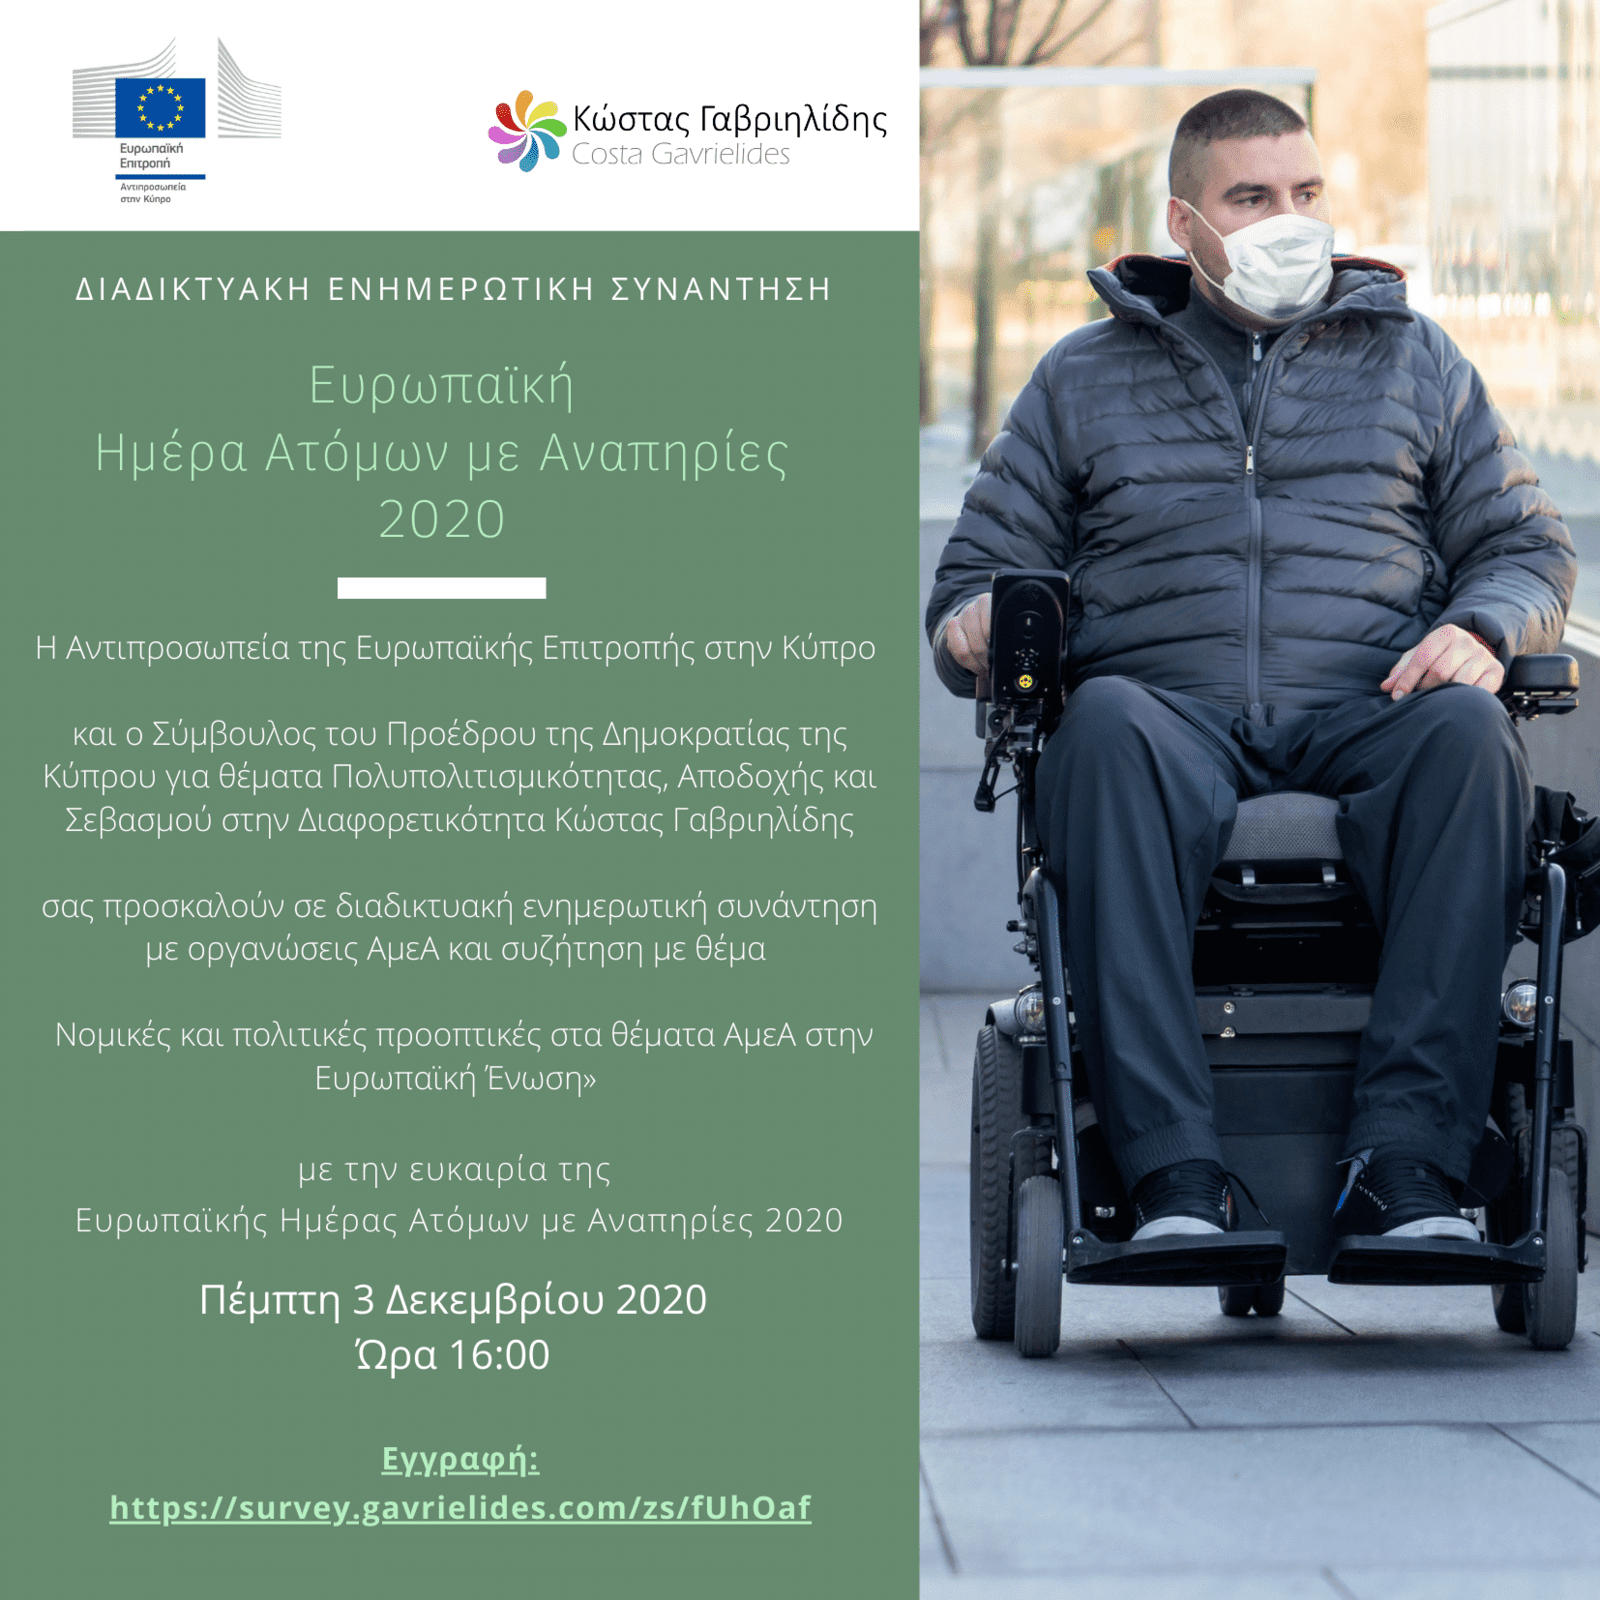 Διαδικτυακή Ενημερωτική Συνάντηση - Ευρωπαική Ημέρα Ατόμων με Αναπηρίες 2020